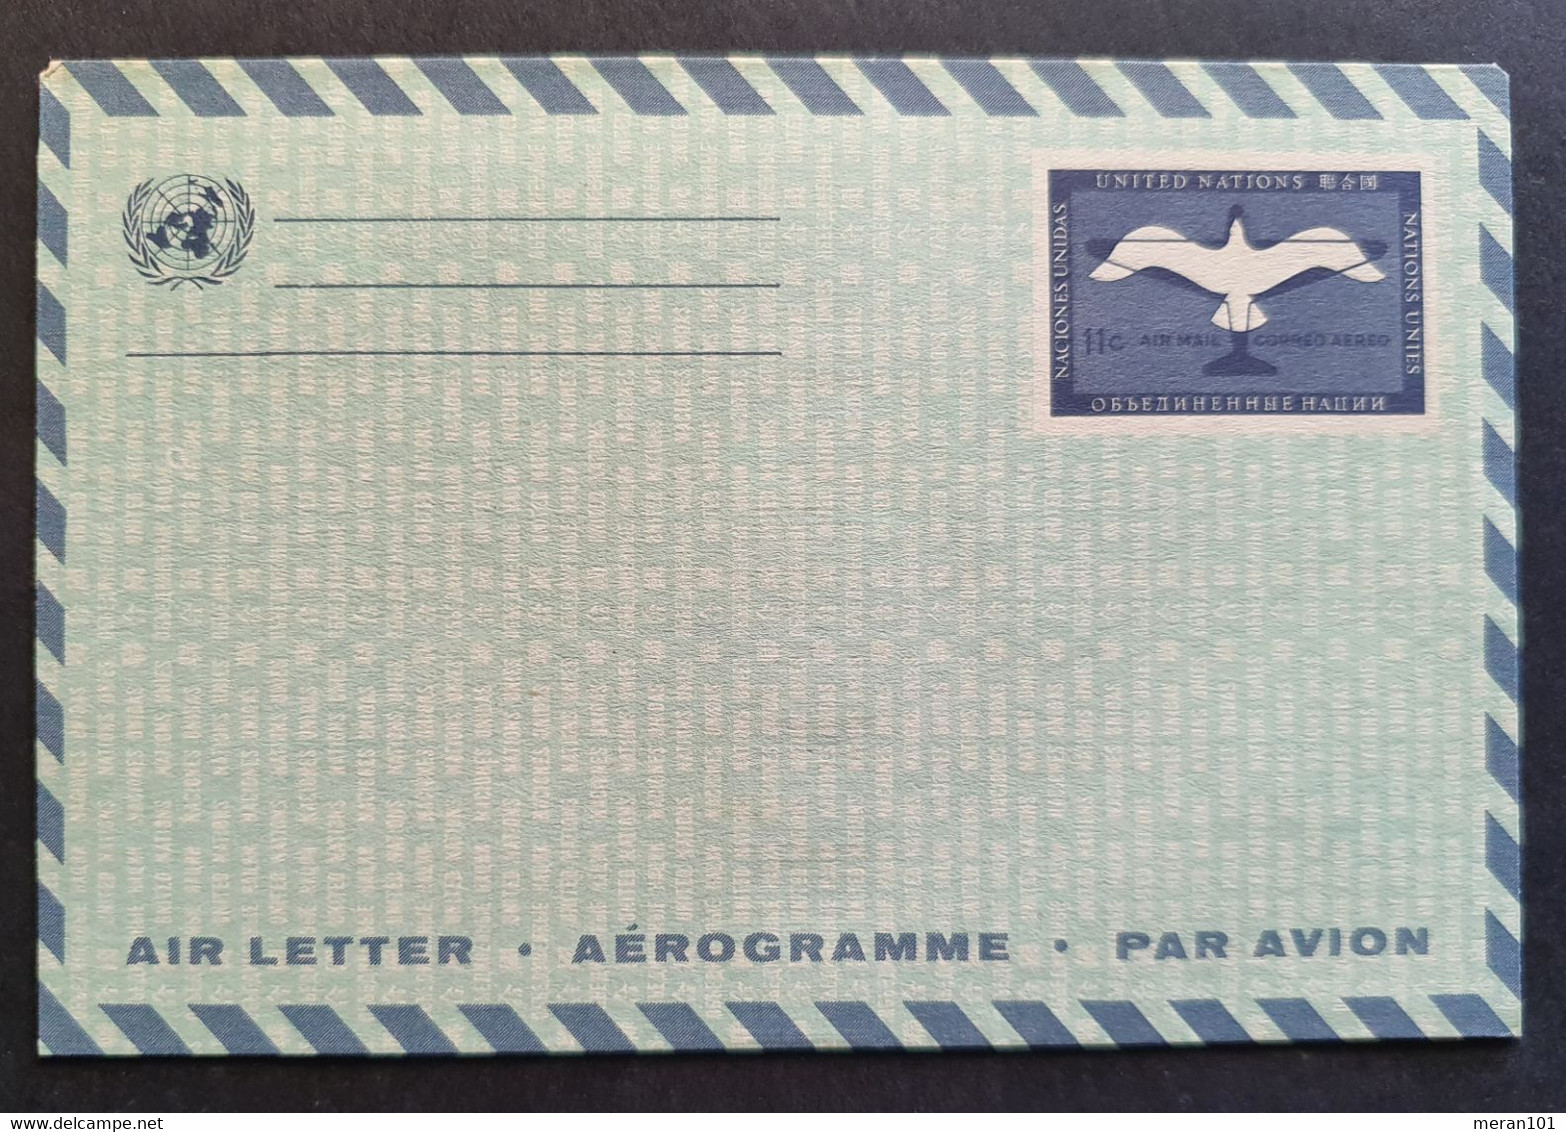 Vereinte Nationen New York, Umschlag Aerogramm Ungebraucht - Poste Aérienne